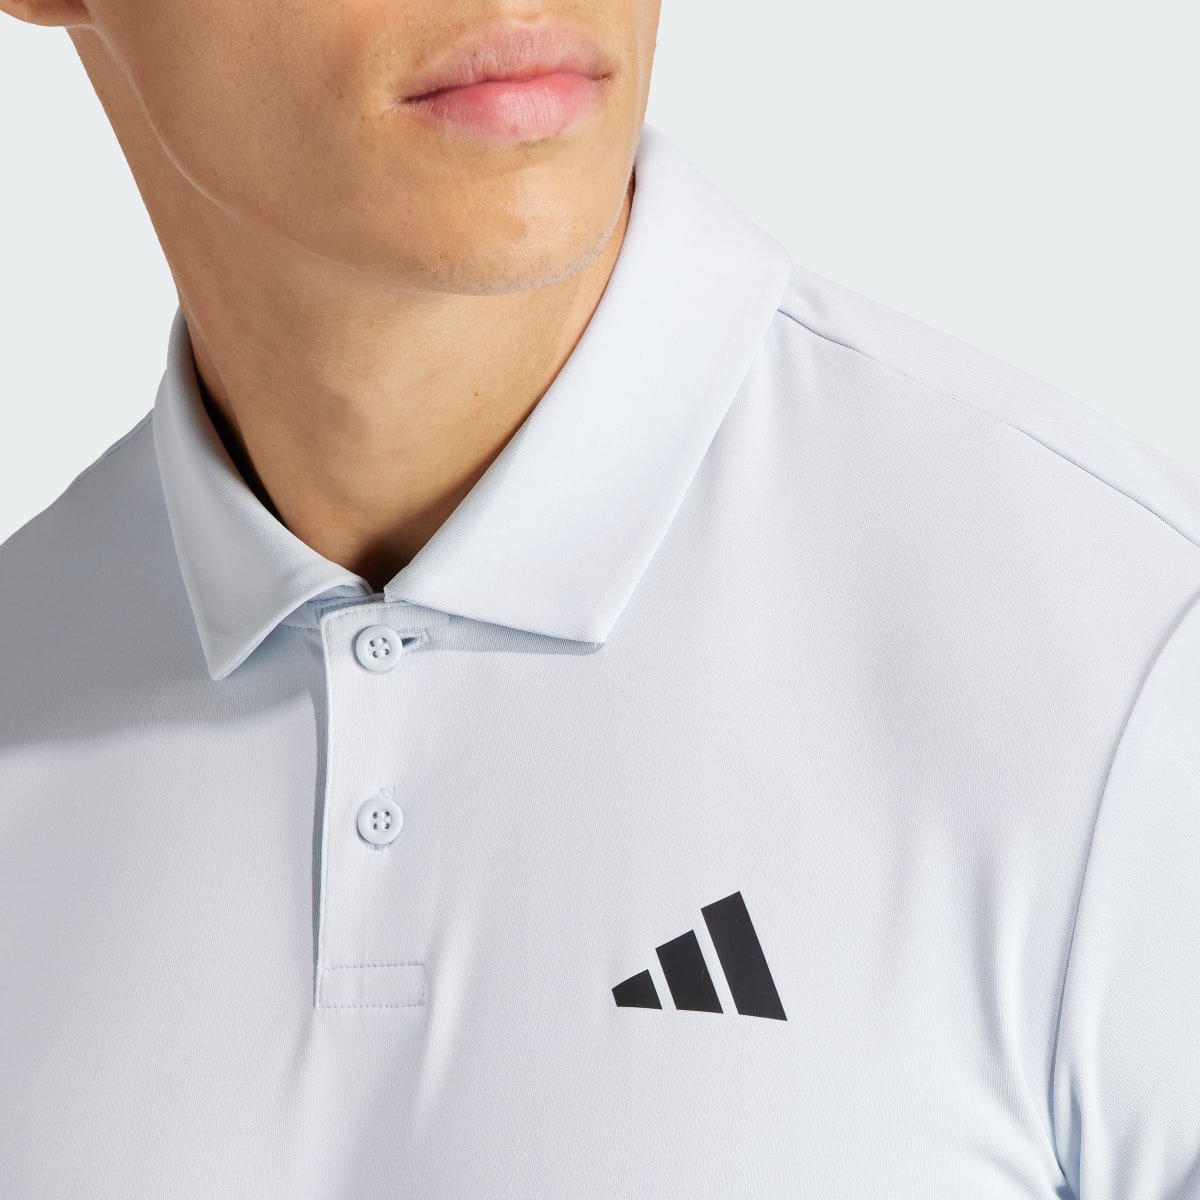 Adidas Club 3-Stripes Tennis Polo Shirt. 5